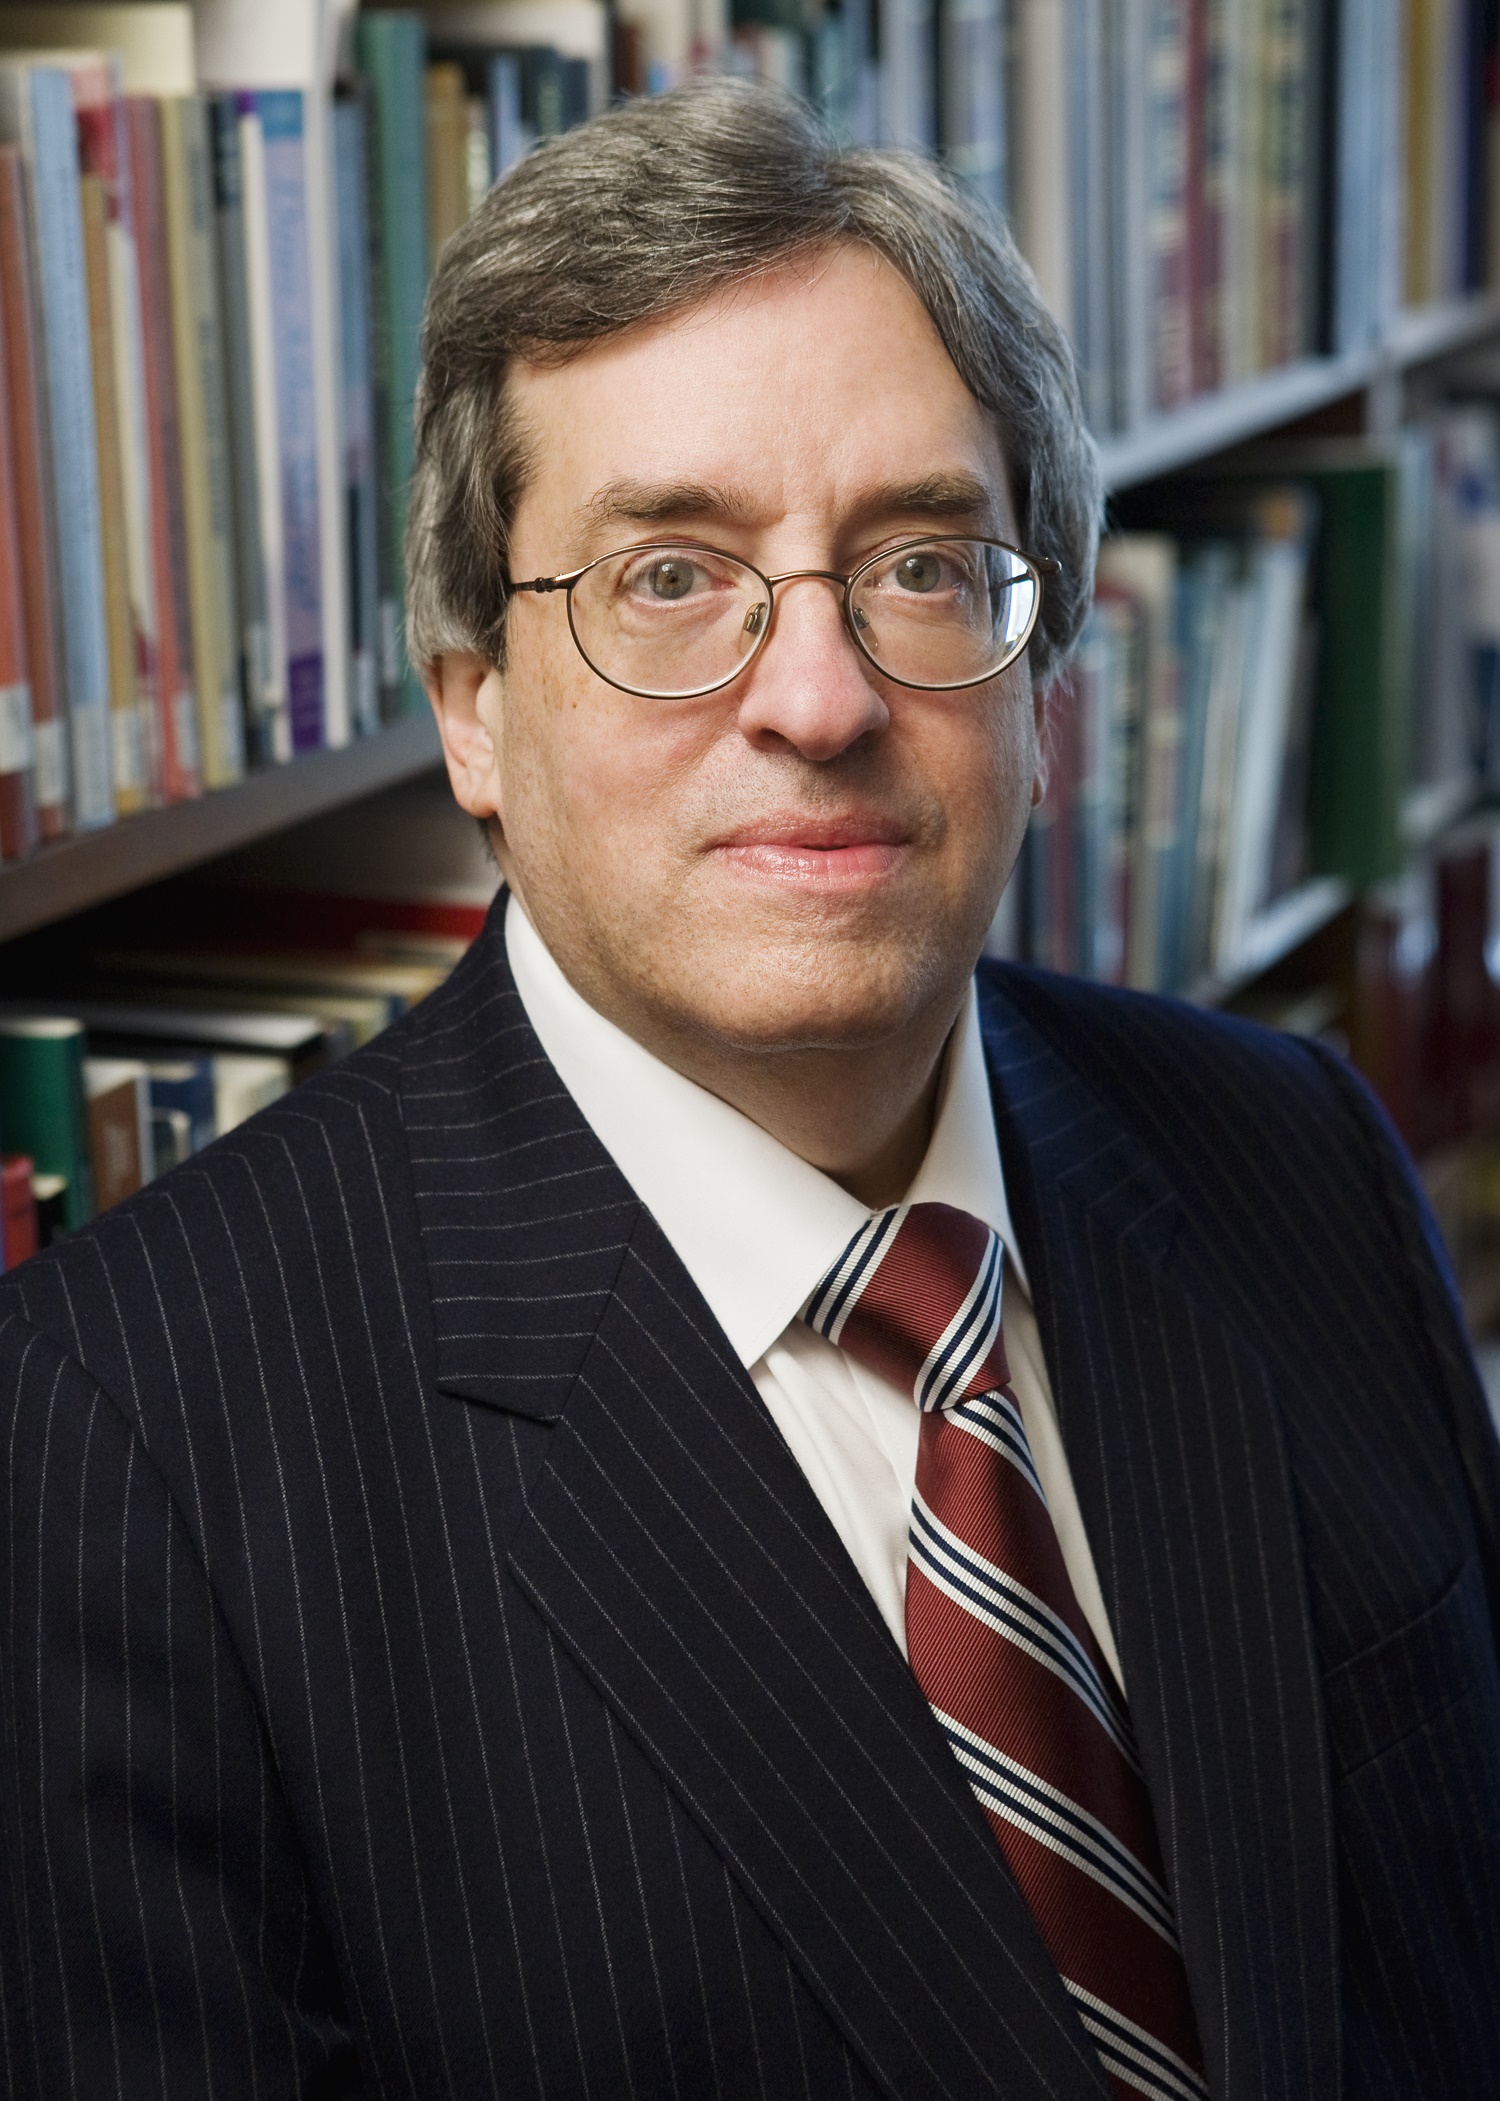 Richard L. Kaplan